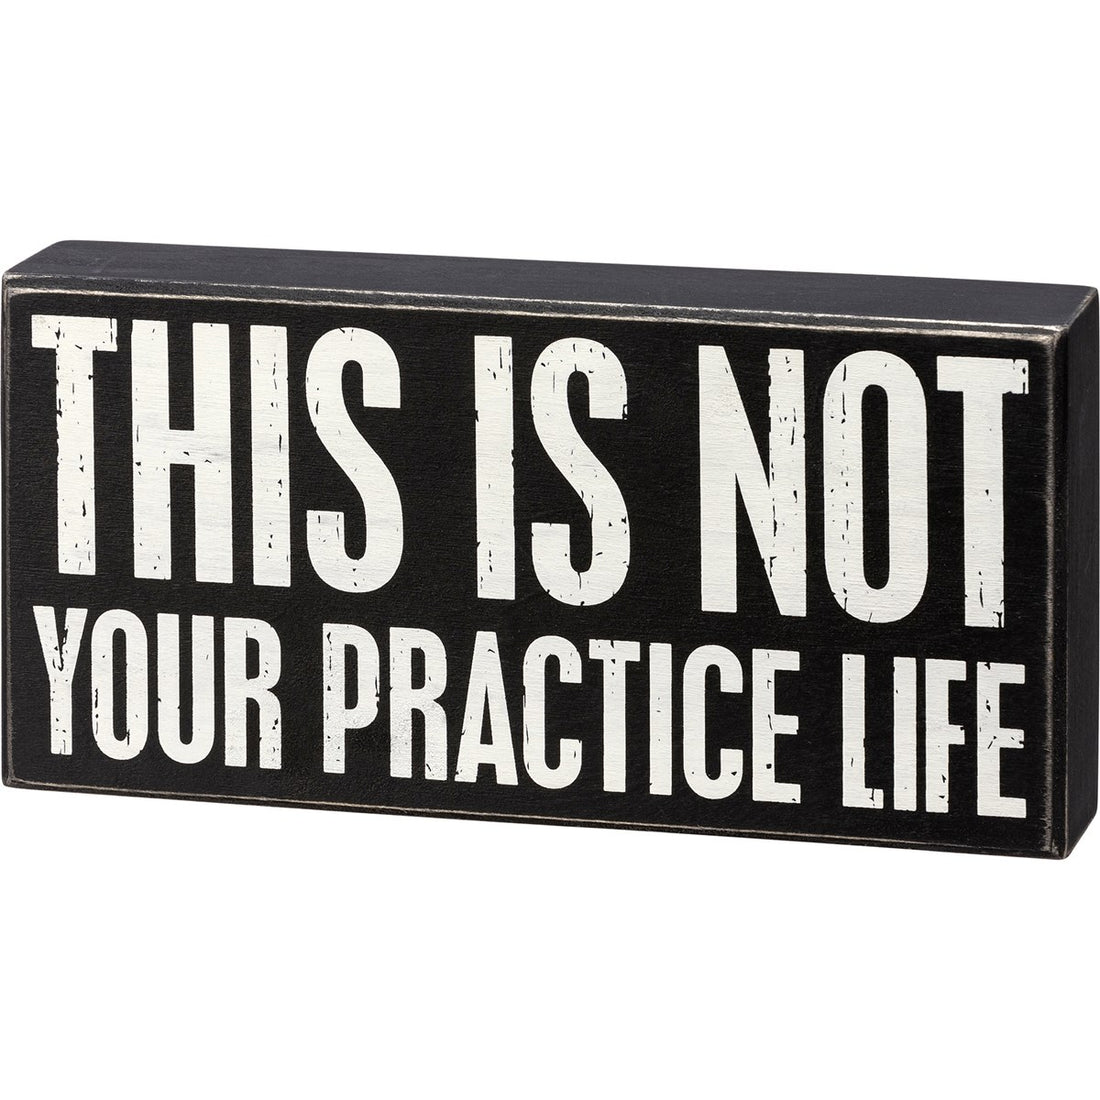 Practice Life